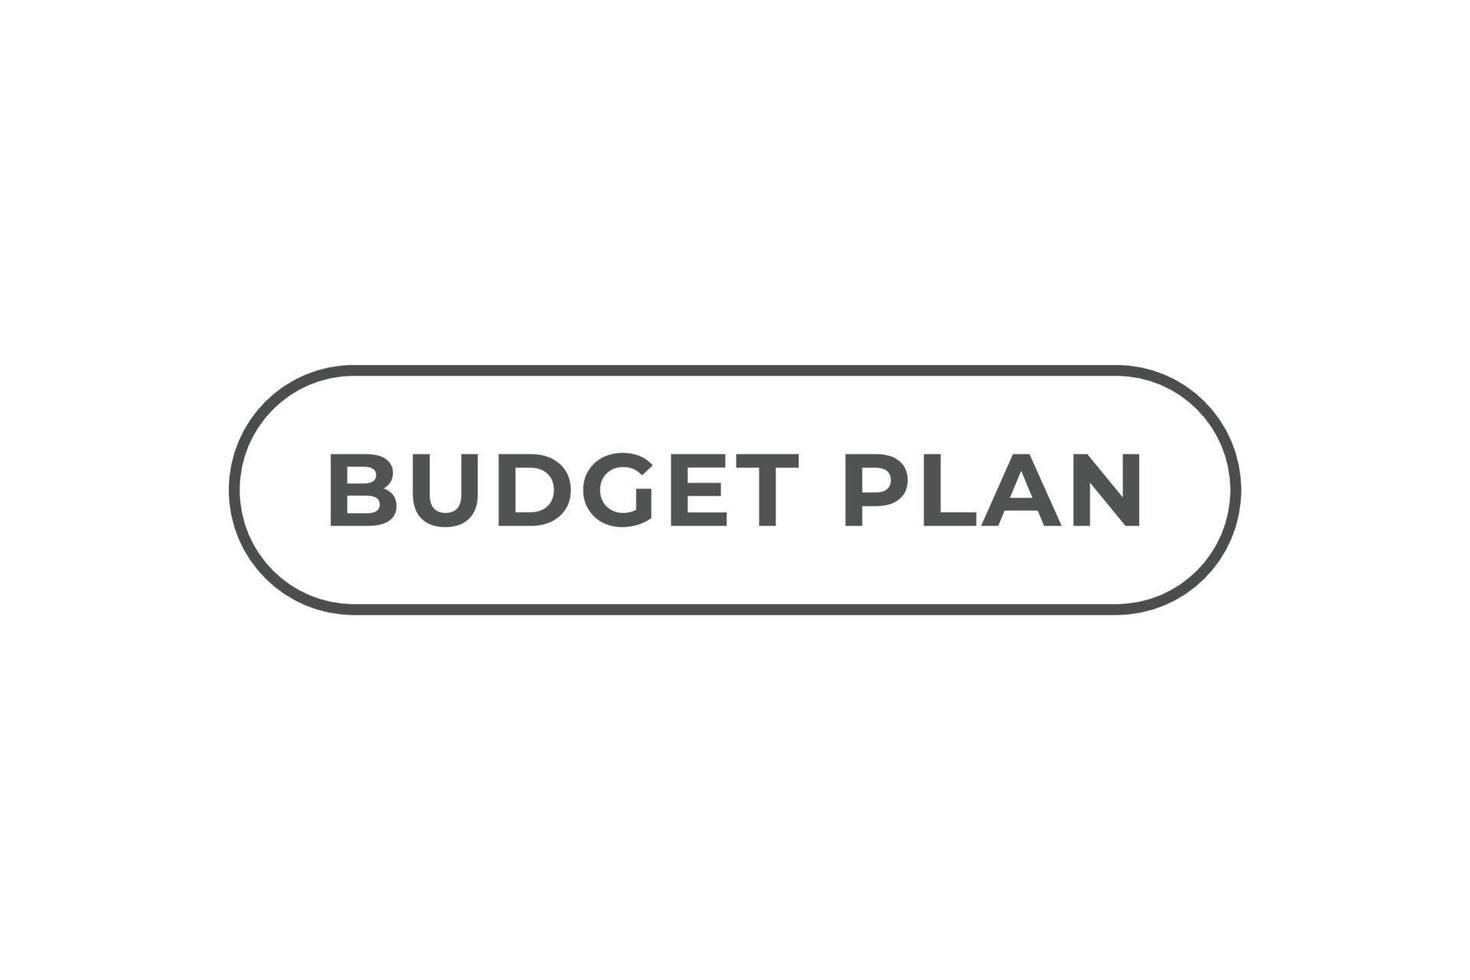 Budget planen Taste. Netz Vorlage, Rede Blase, Banner Etikette Budget planen. Zeichen Symbol Vektor Illustration